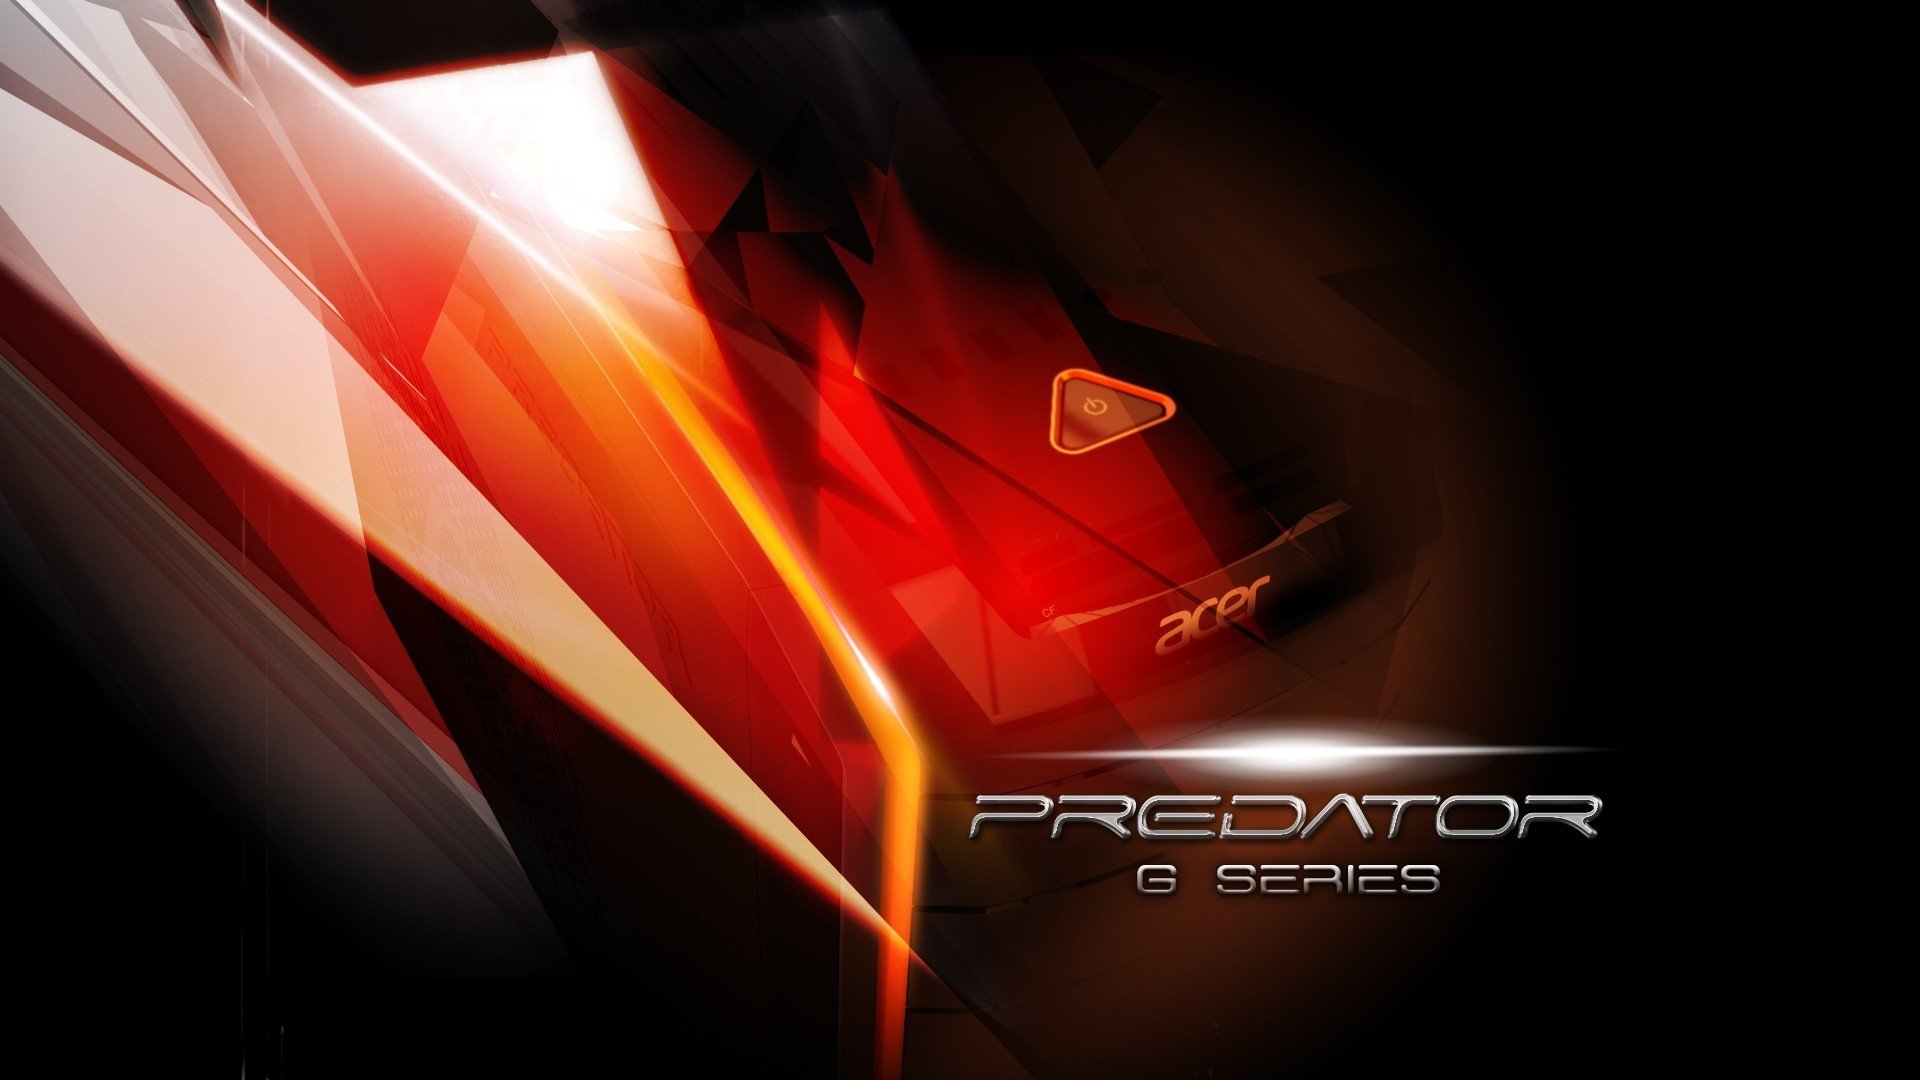 Acer Aspire Predator Gaming Desktop Puter Wallpaper